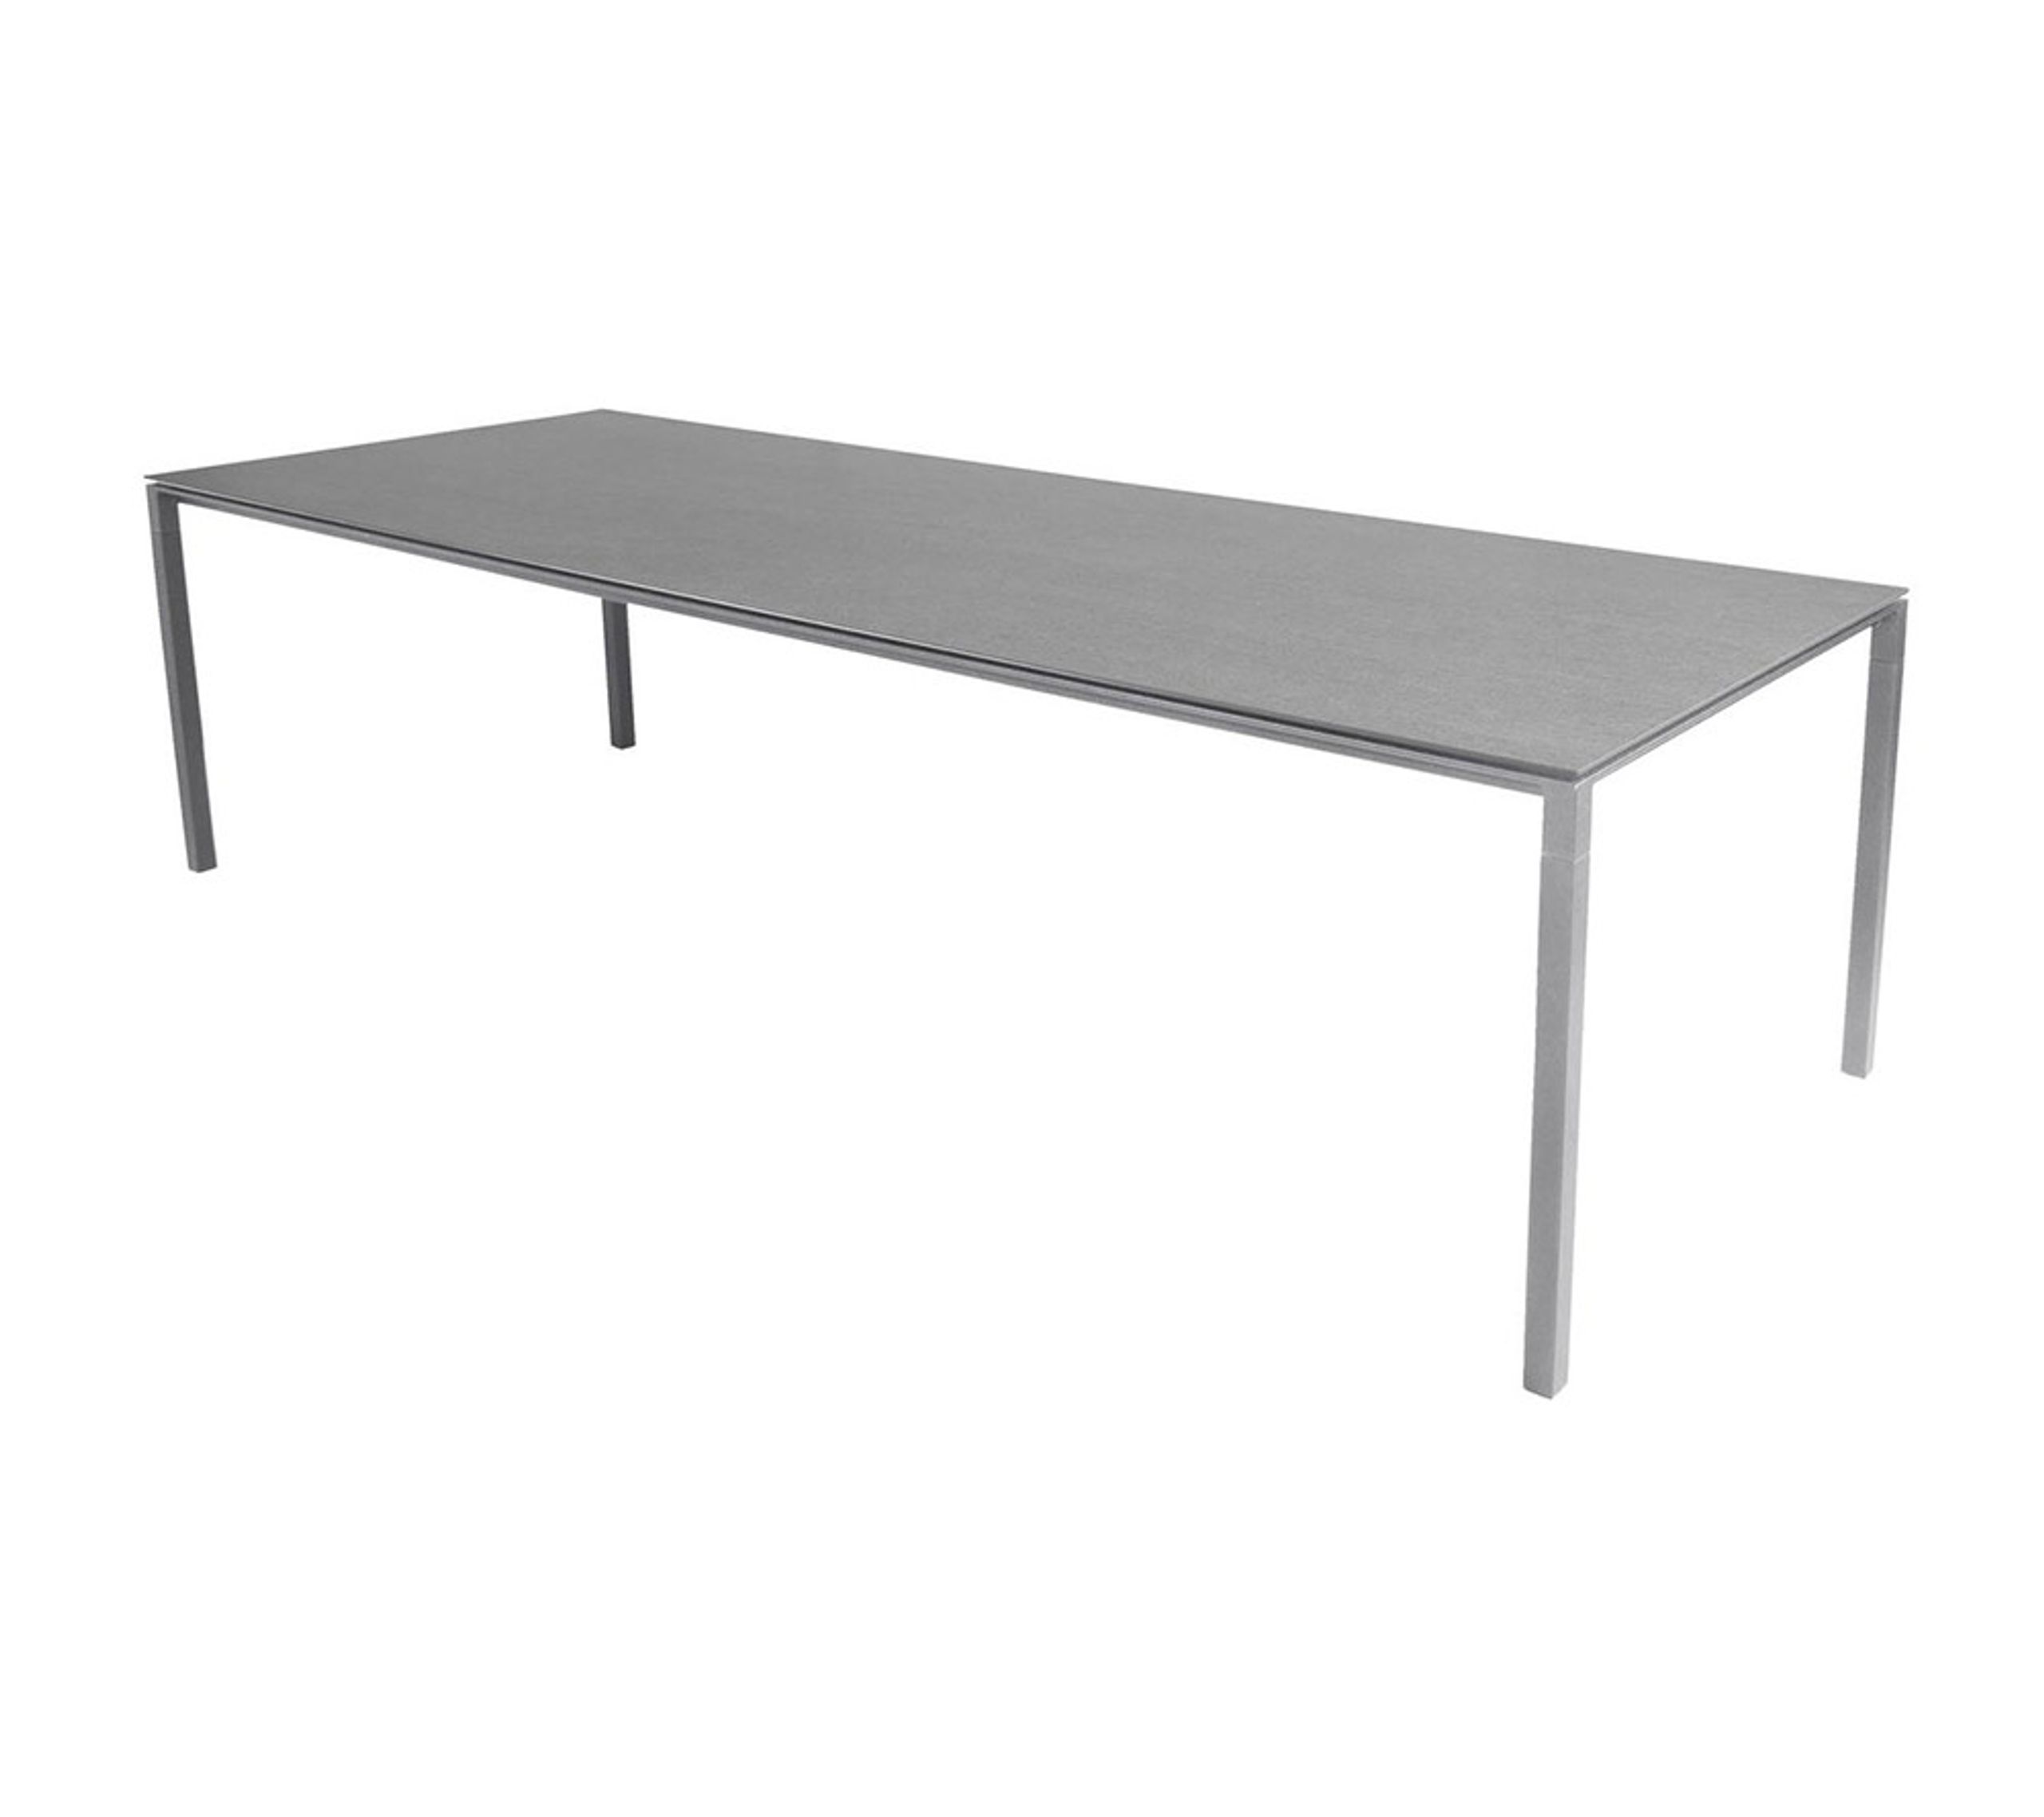 Cane-line - Esstisch - Pure Table - 280x100 - Frame: Light Grey Aluminium / Tabletop: Concrete Grey Ceramic